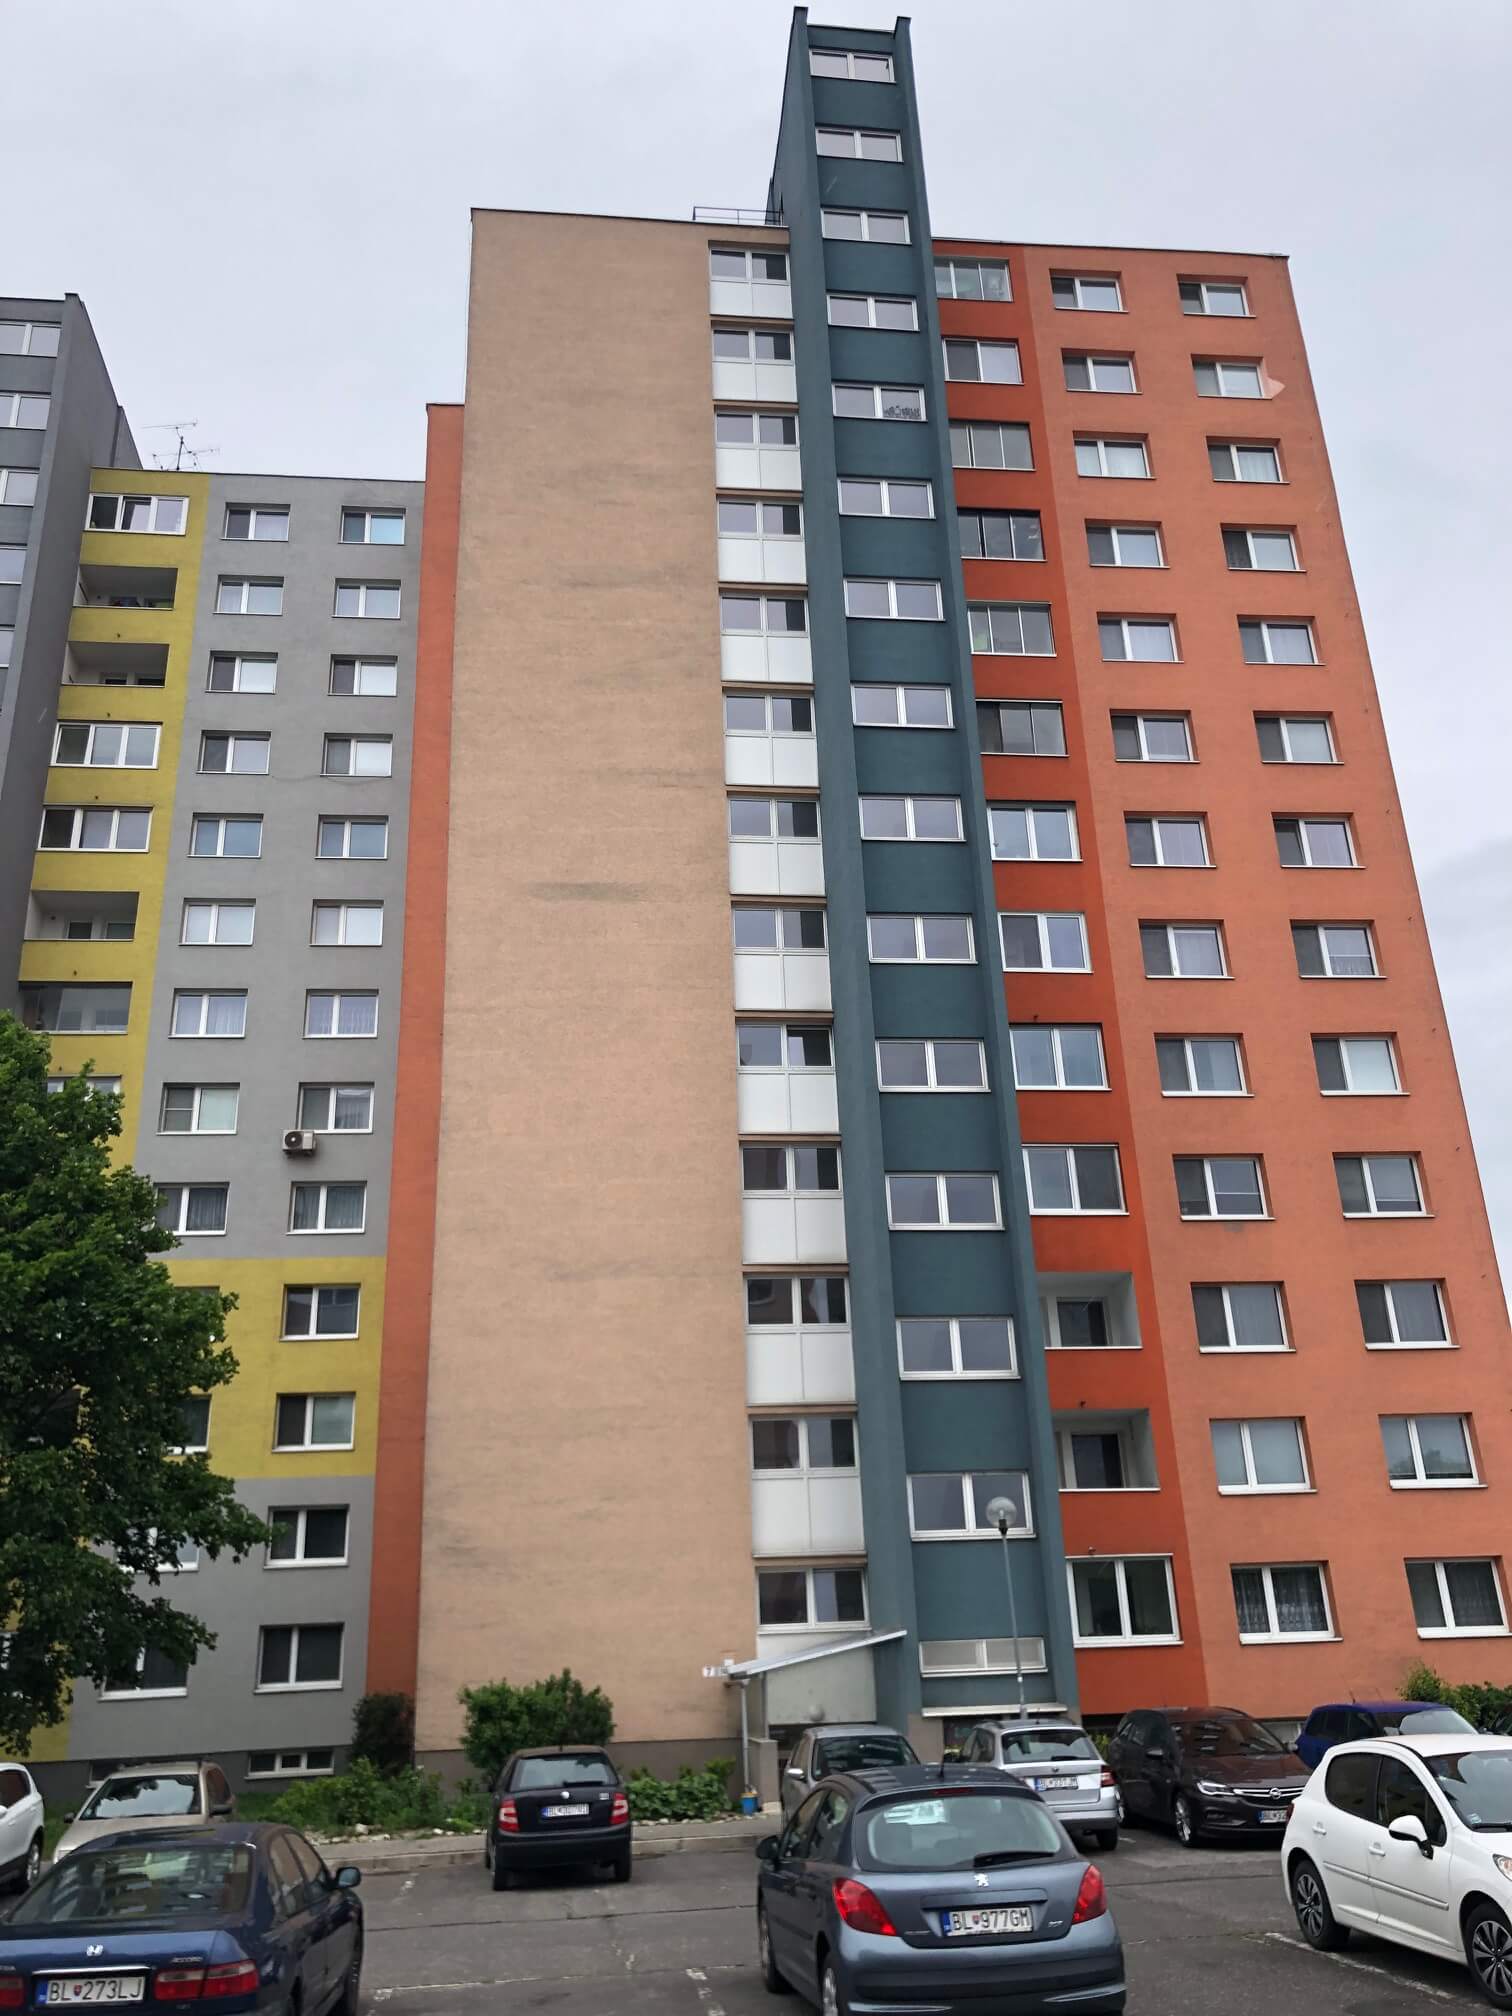 Predaný: 1 izbový byt, Ipeľská, Bratislava, 38m2, nízke náklady, parkovanie, vynikajúca občianska vybavenosť-31